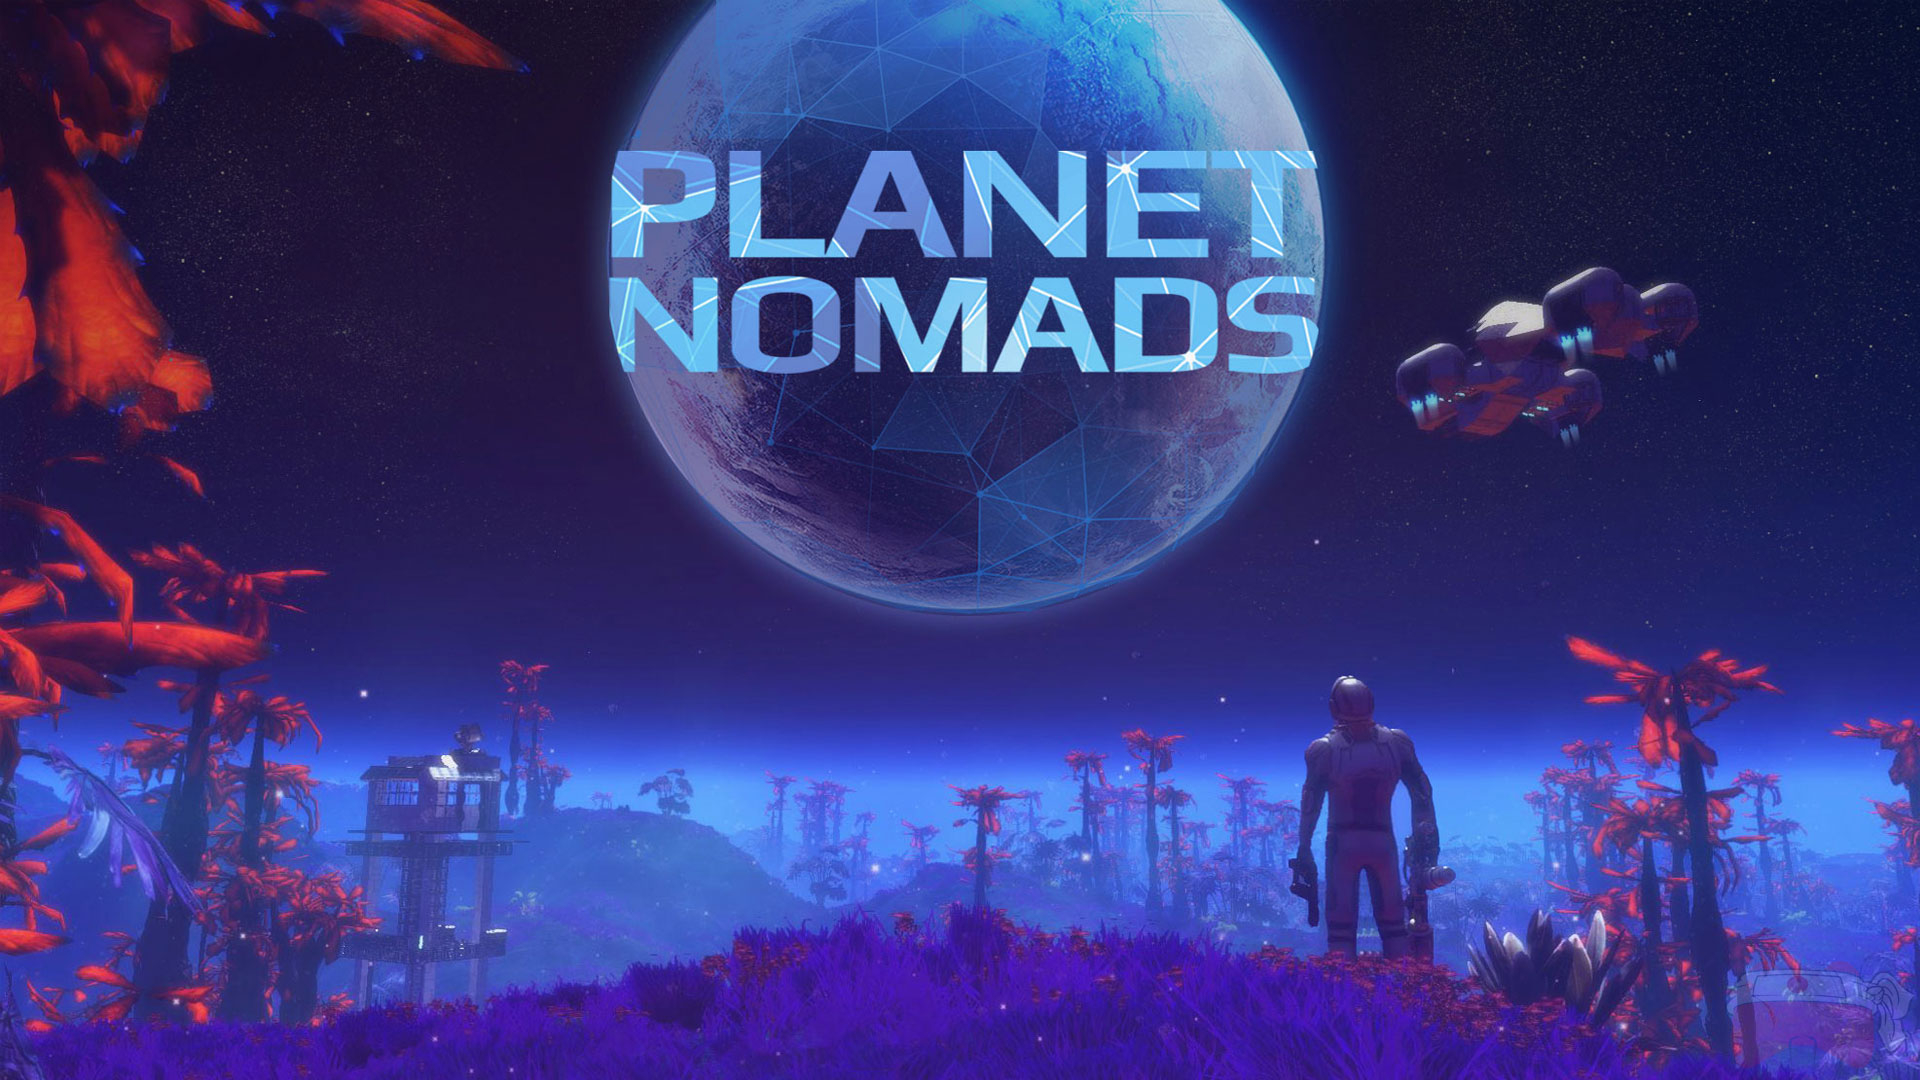 Обложка игры Planet Nomads